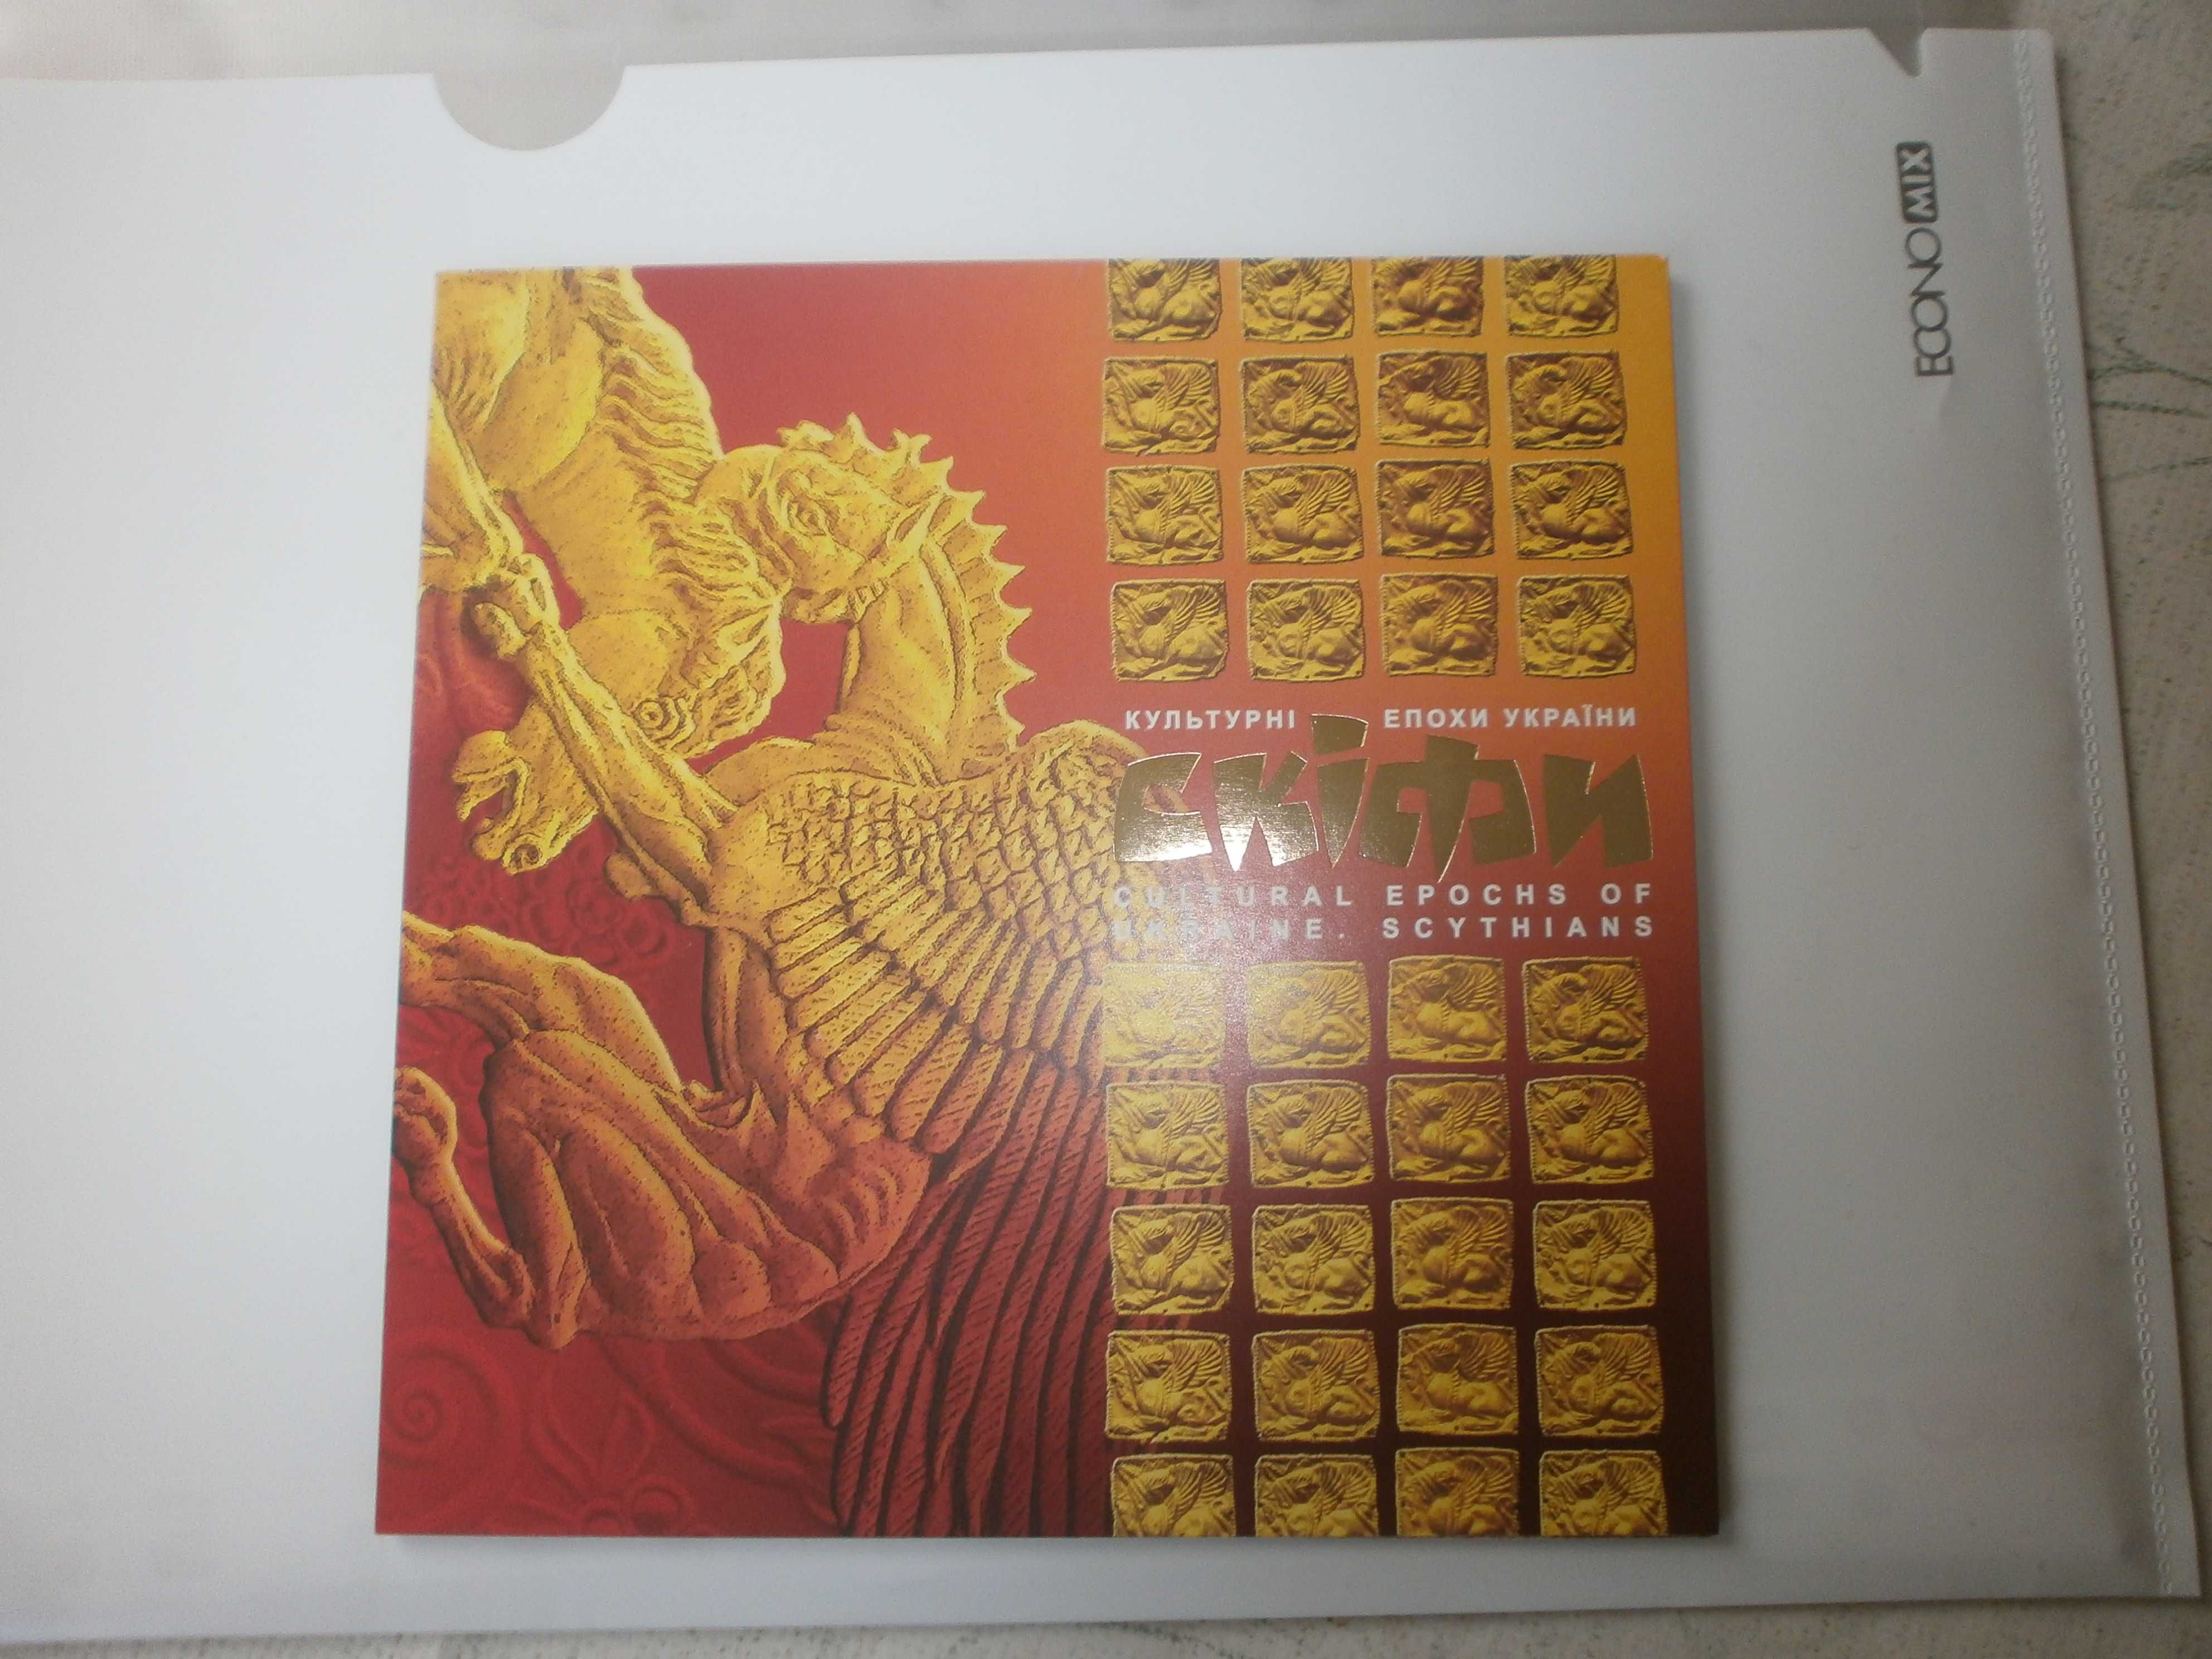 Буклет з блоком "Скіфи" та марки  Культурні епохи